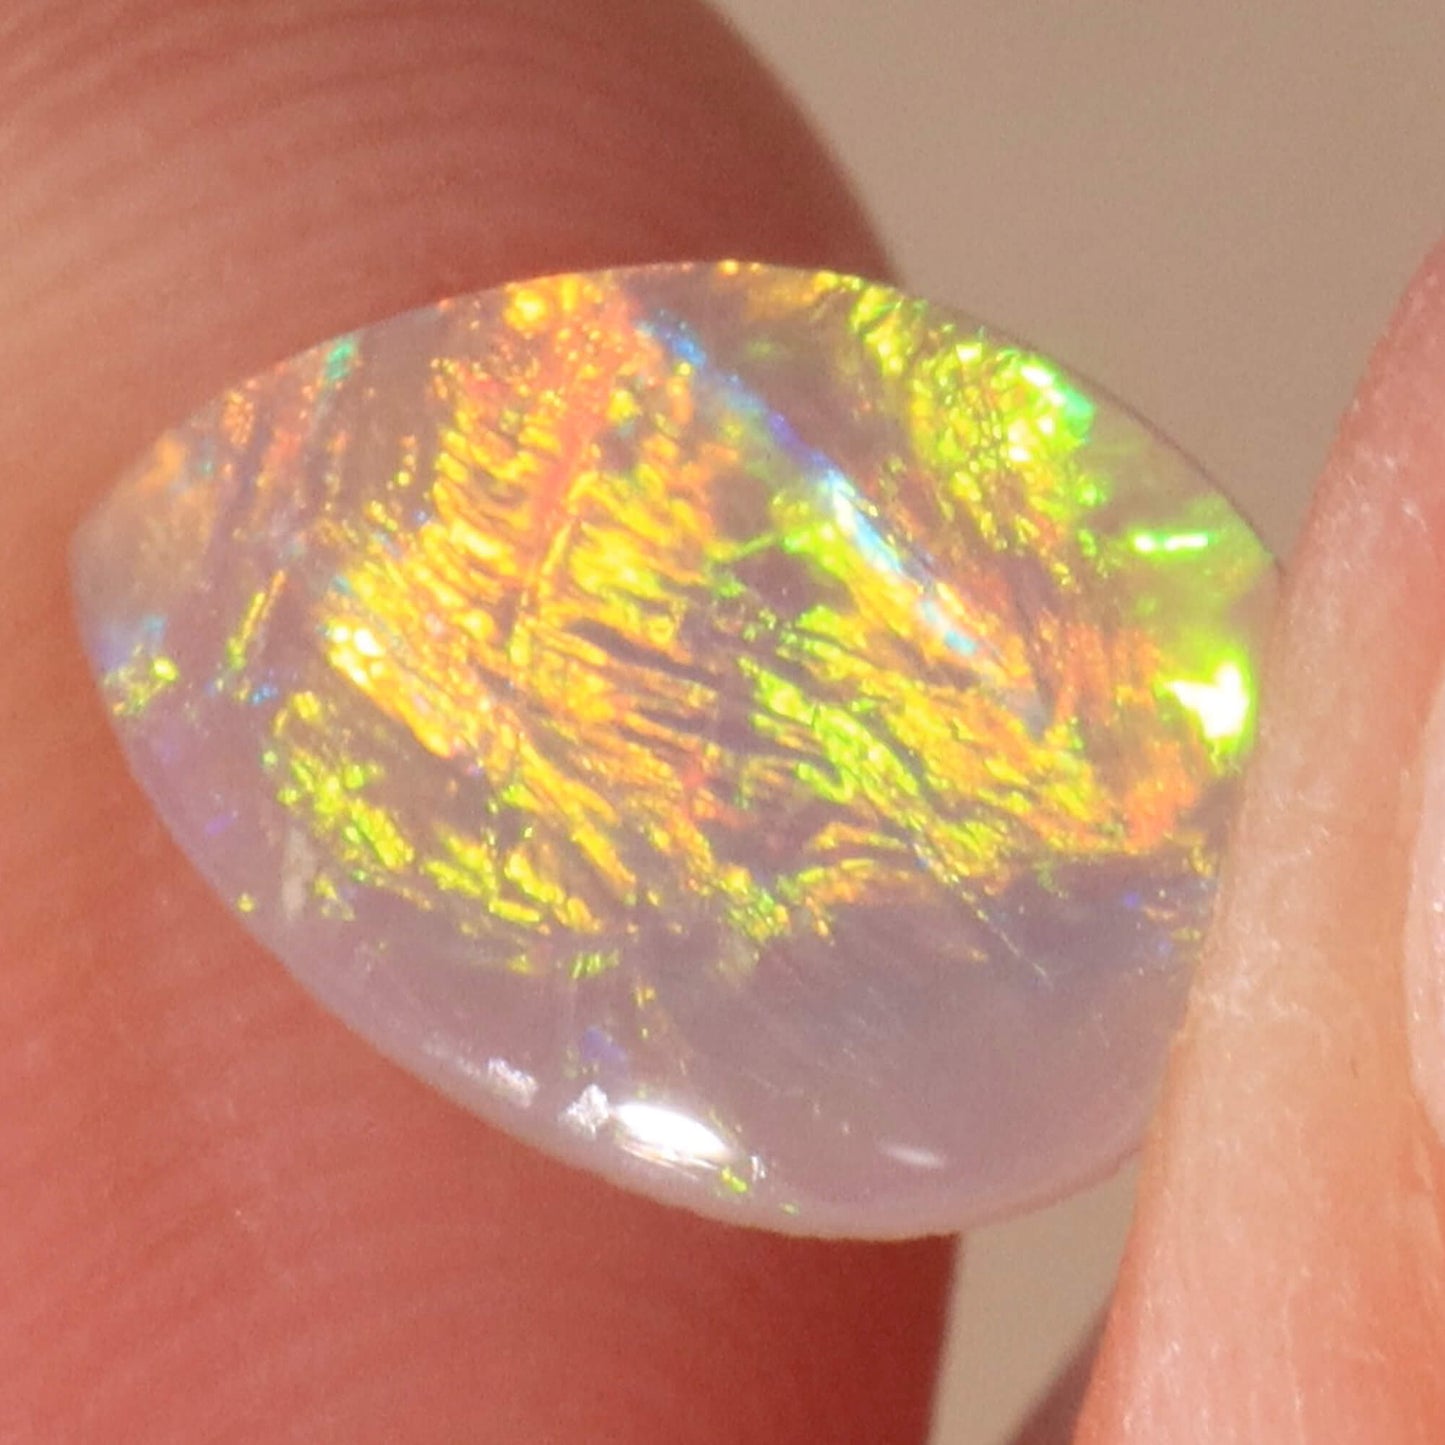 0.50ct Dark Crystal Opal - 7 x 9.5 x 1.5 mm